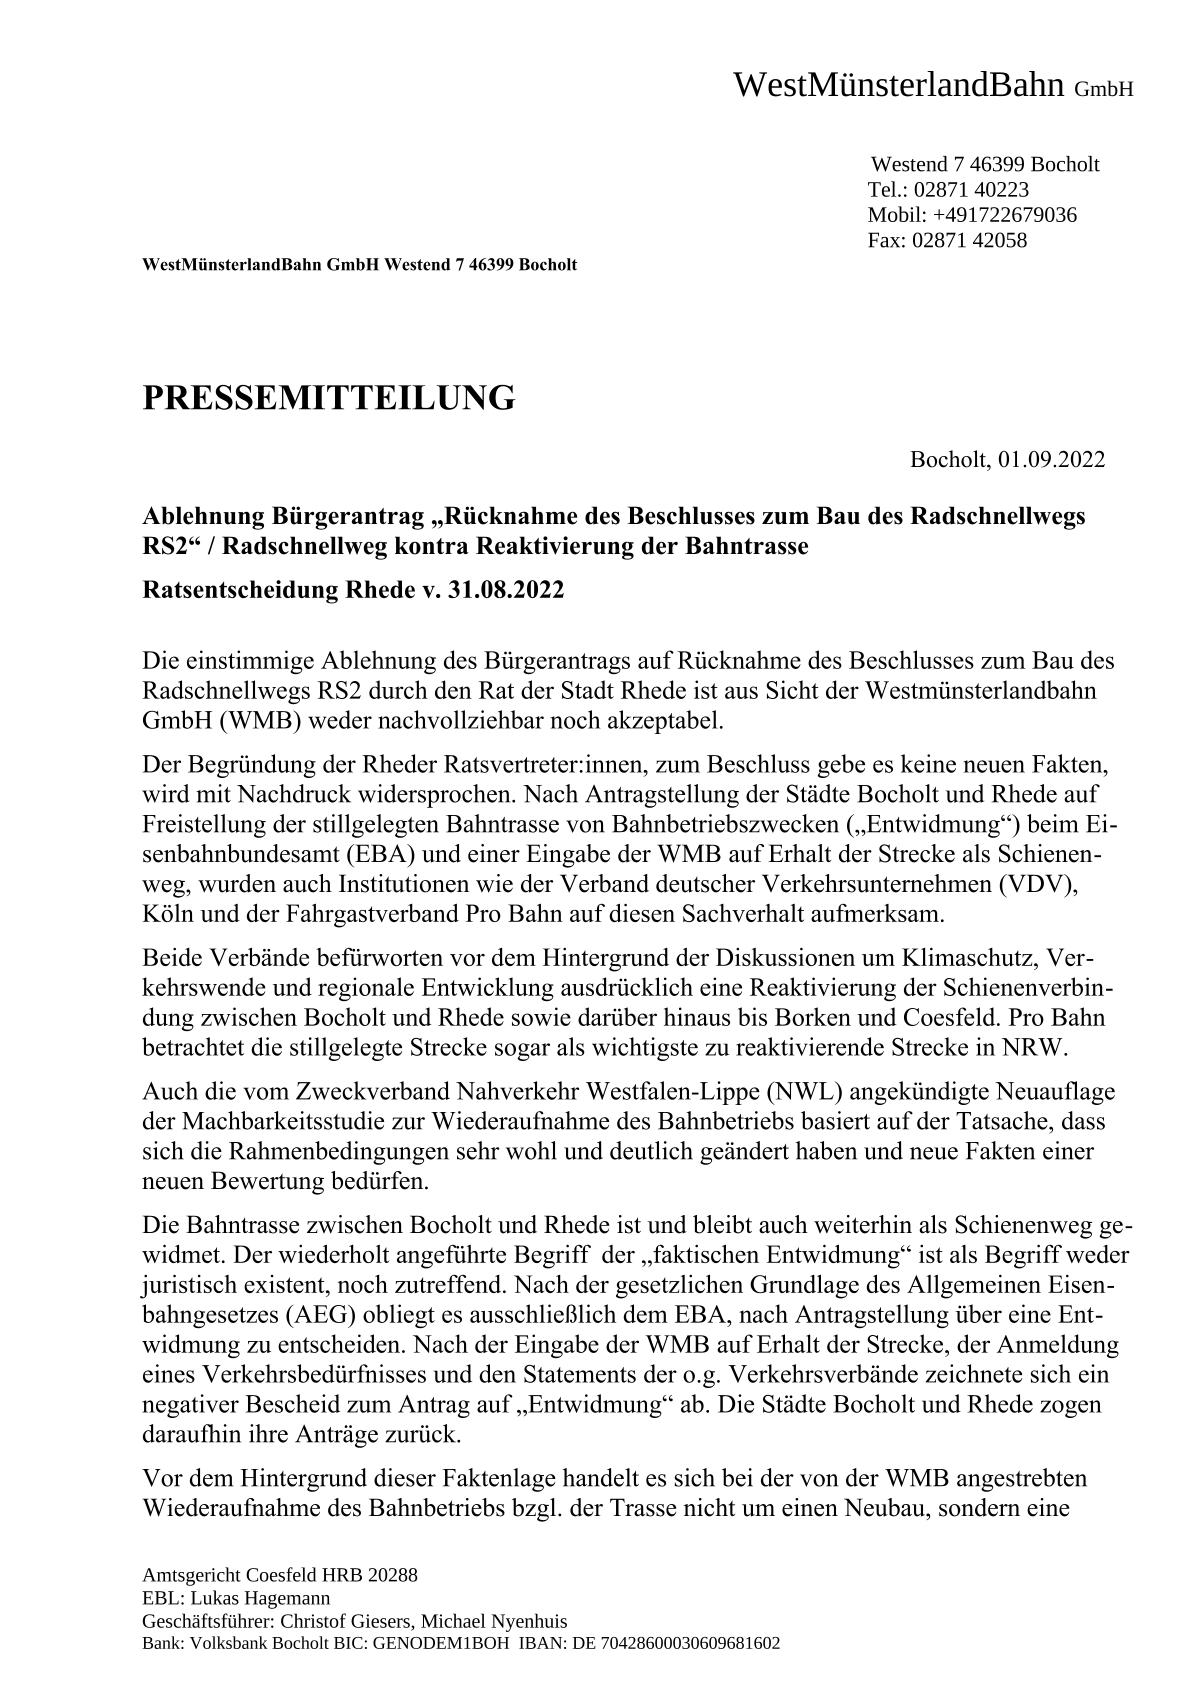 WMB-Pressemitteilung v. 01.09.2022 / Seite 1